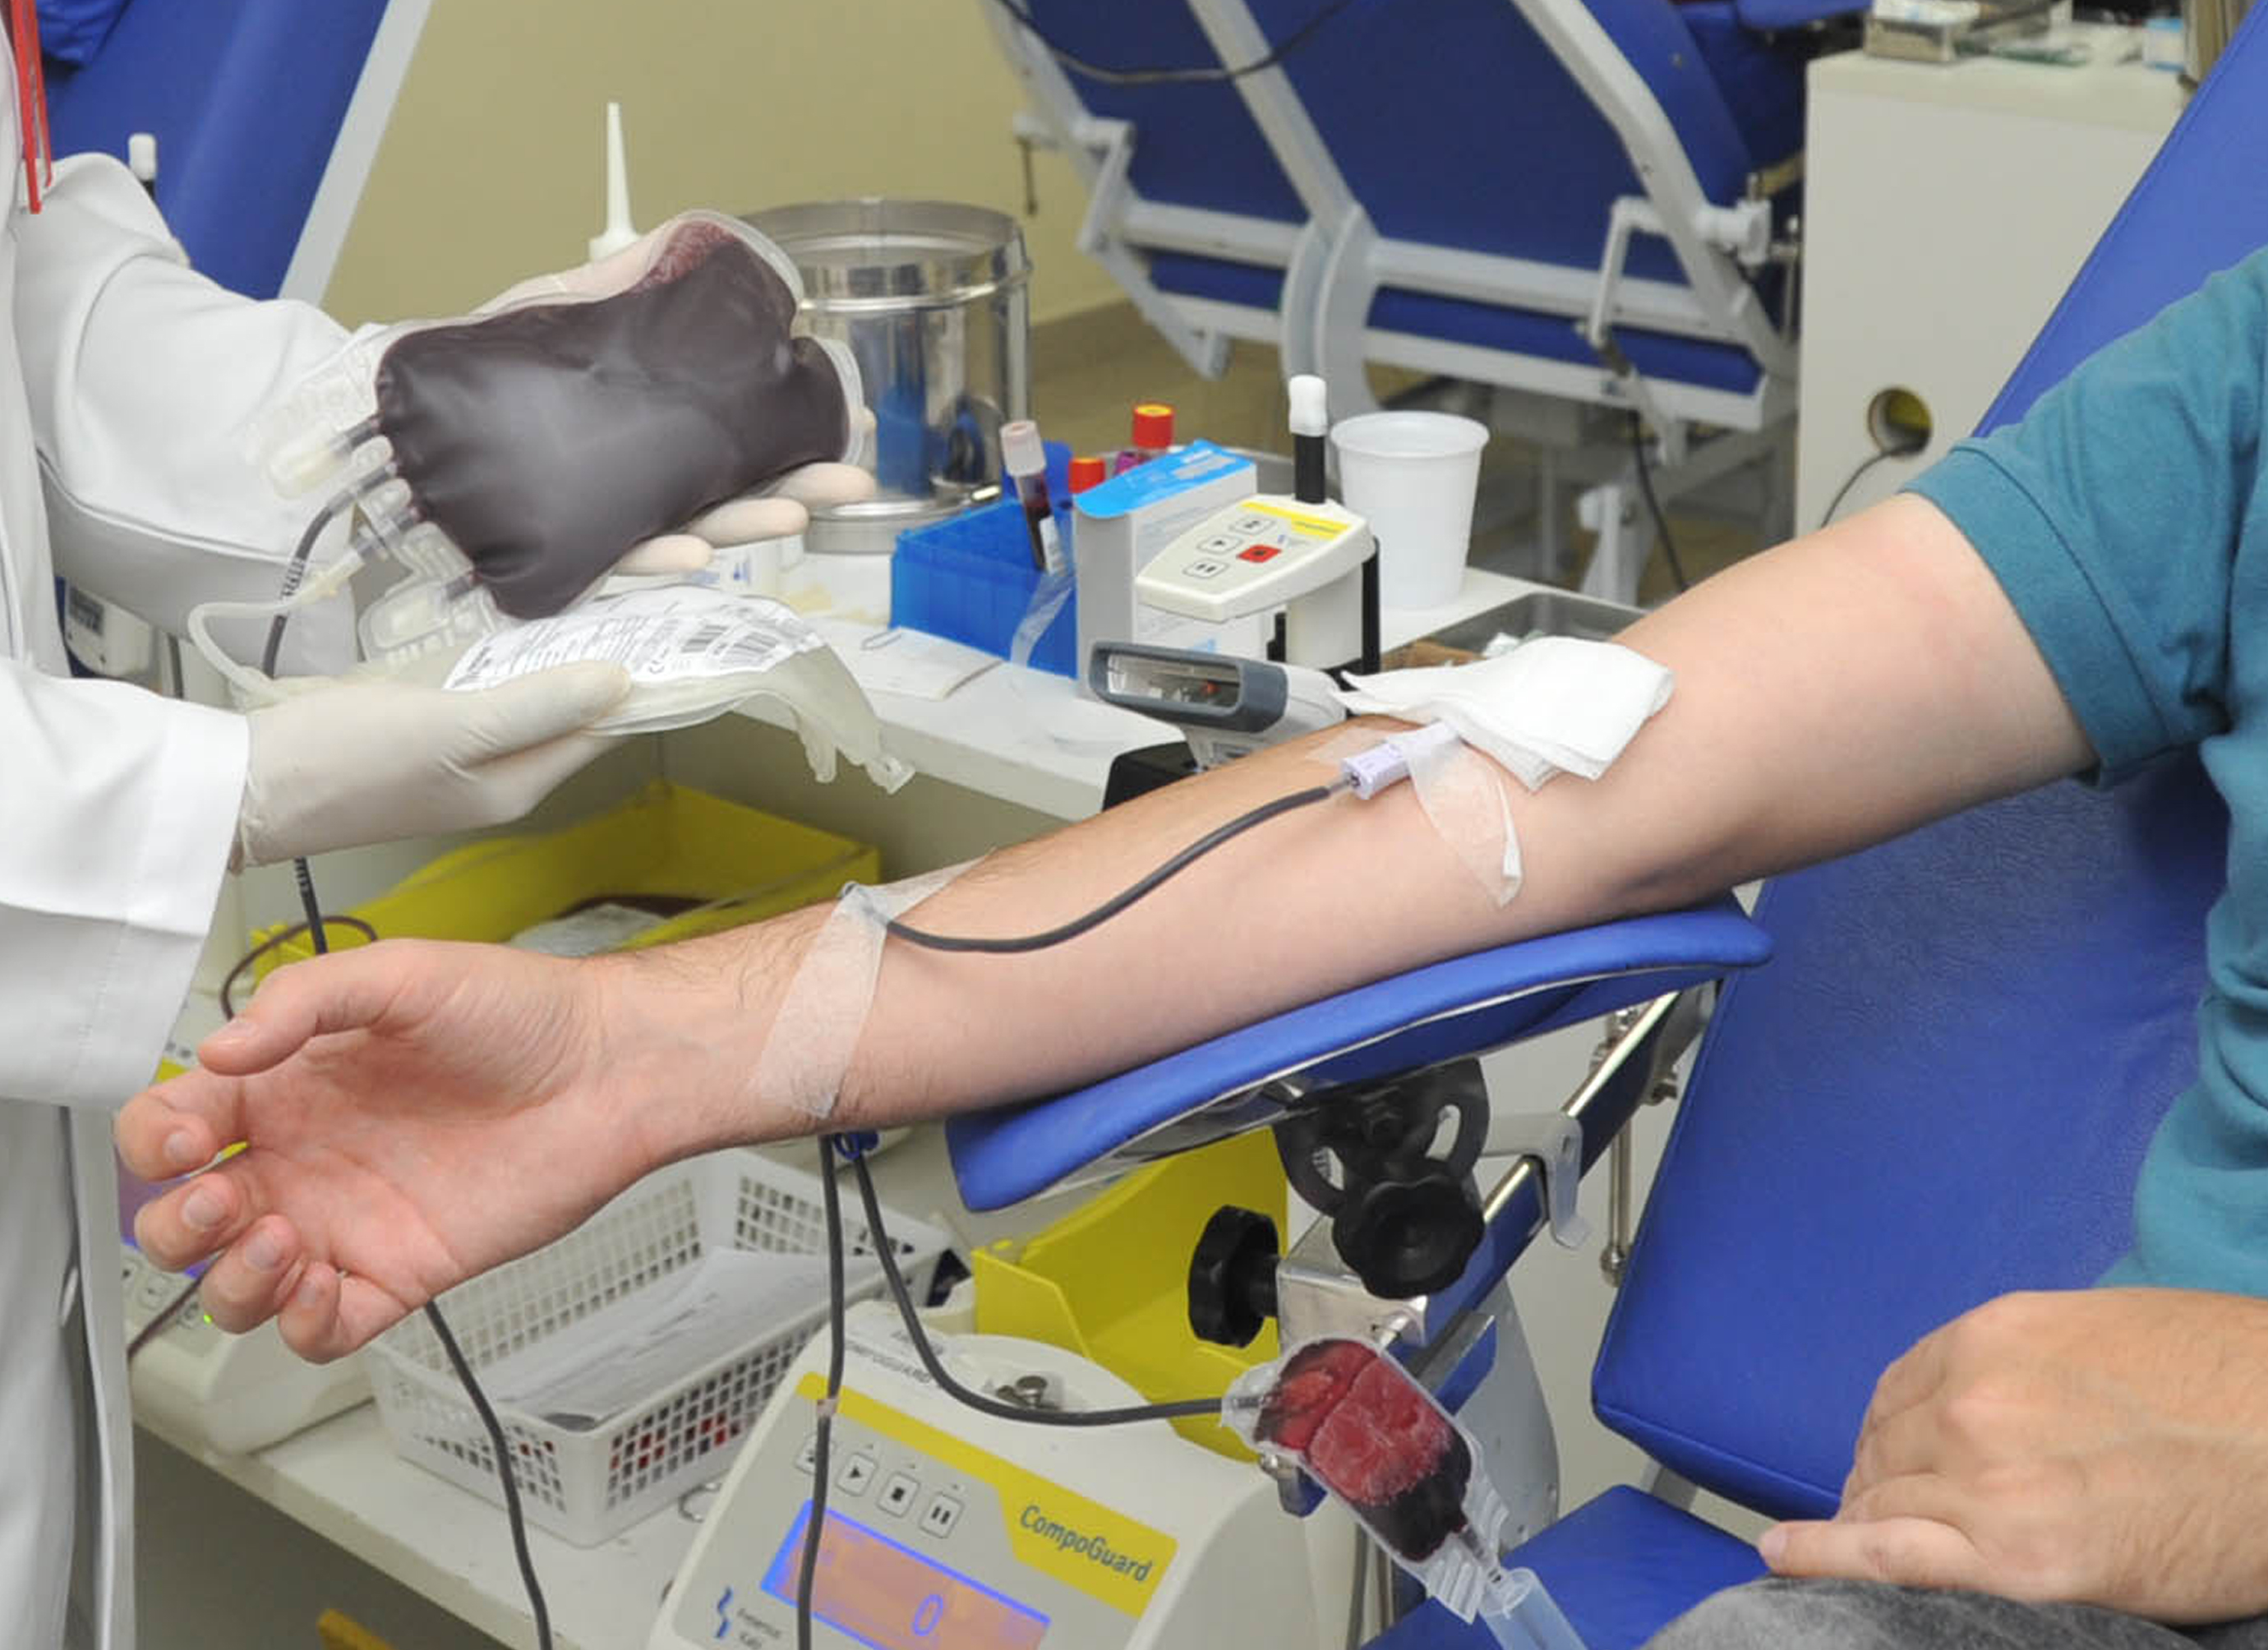 Doação de sangue mulher doa plasma sanguíneo evento de caridade